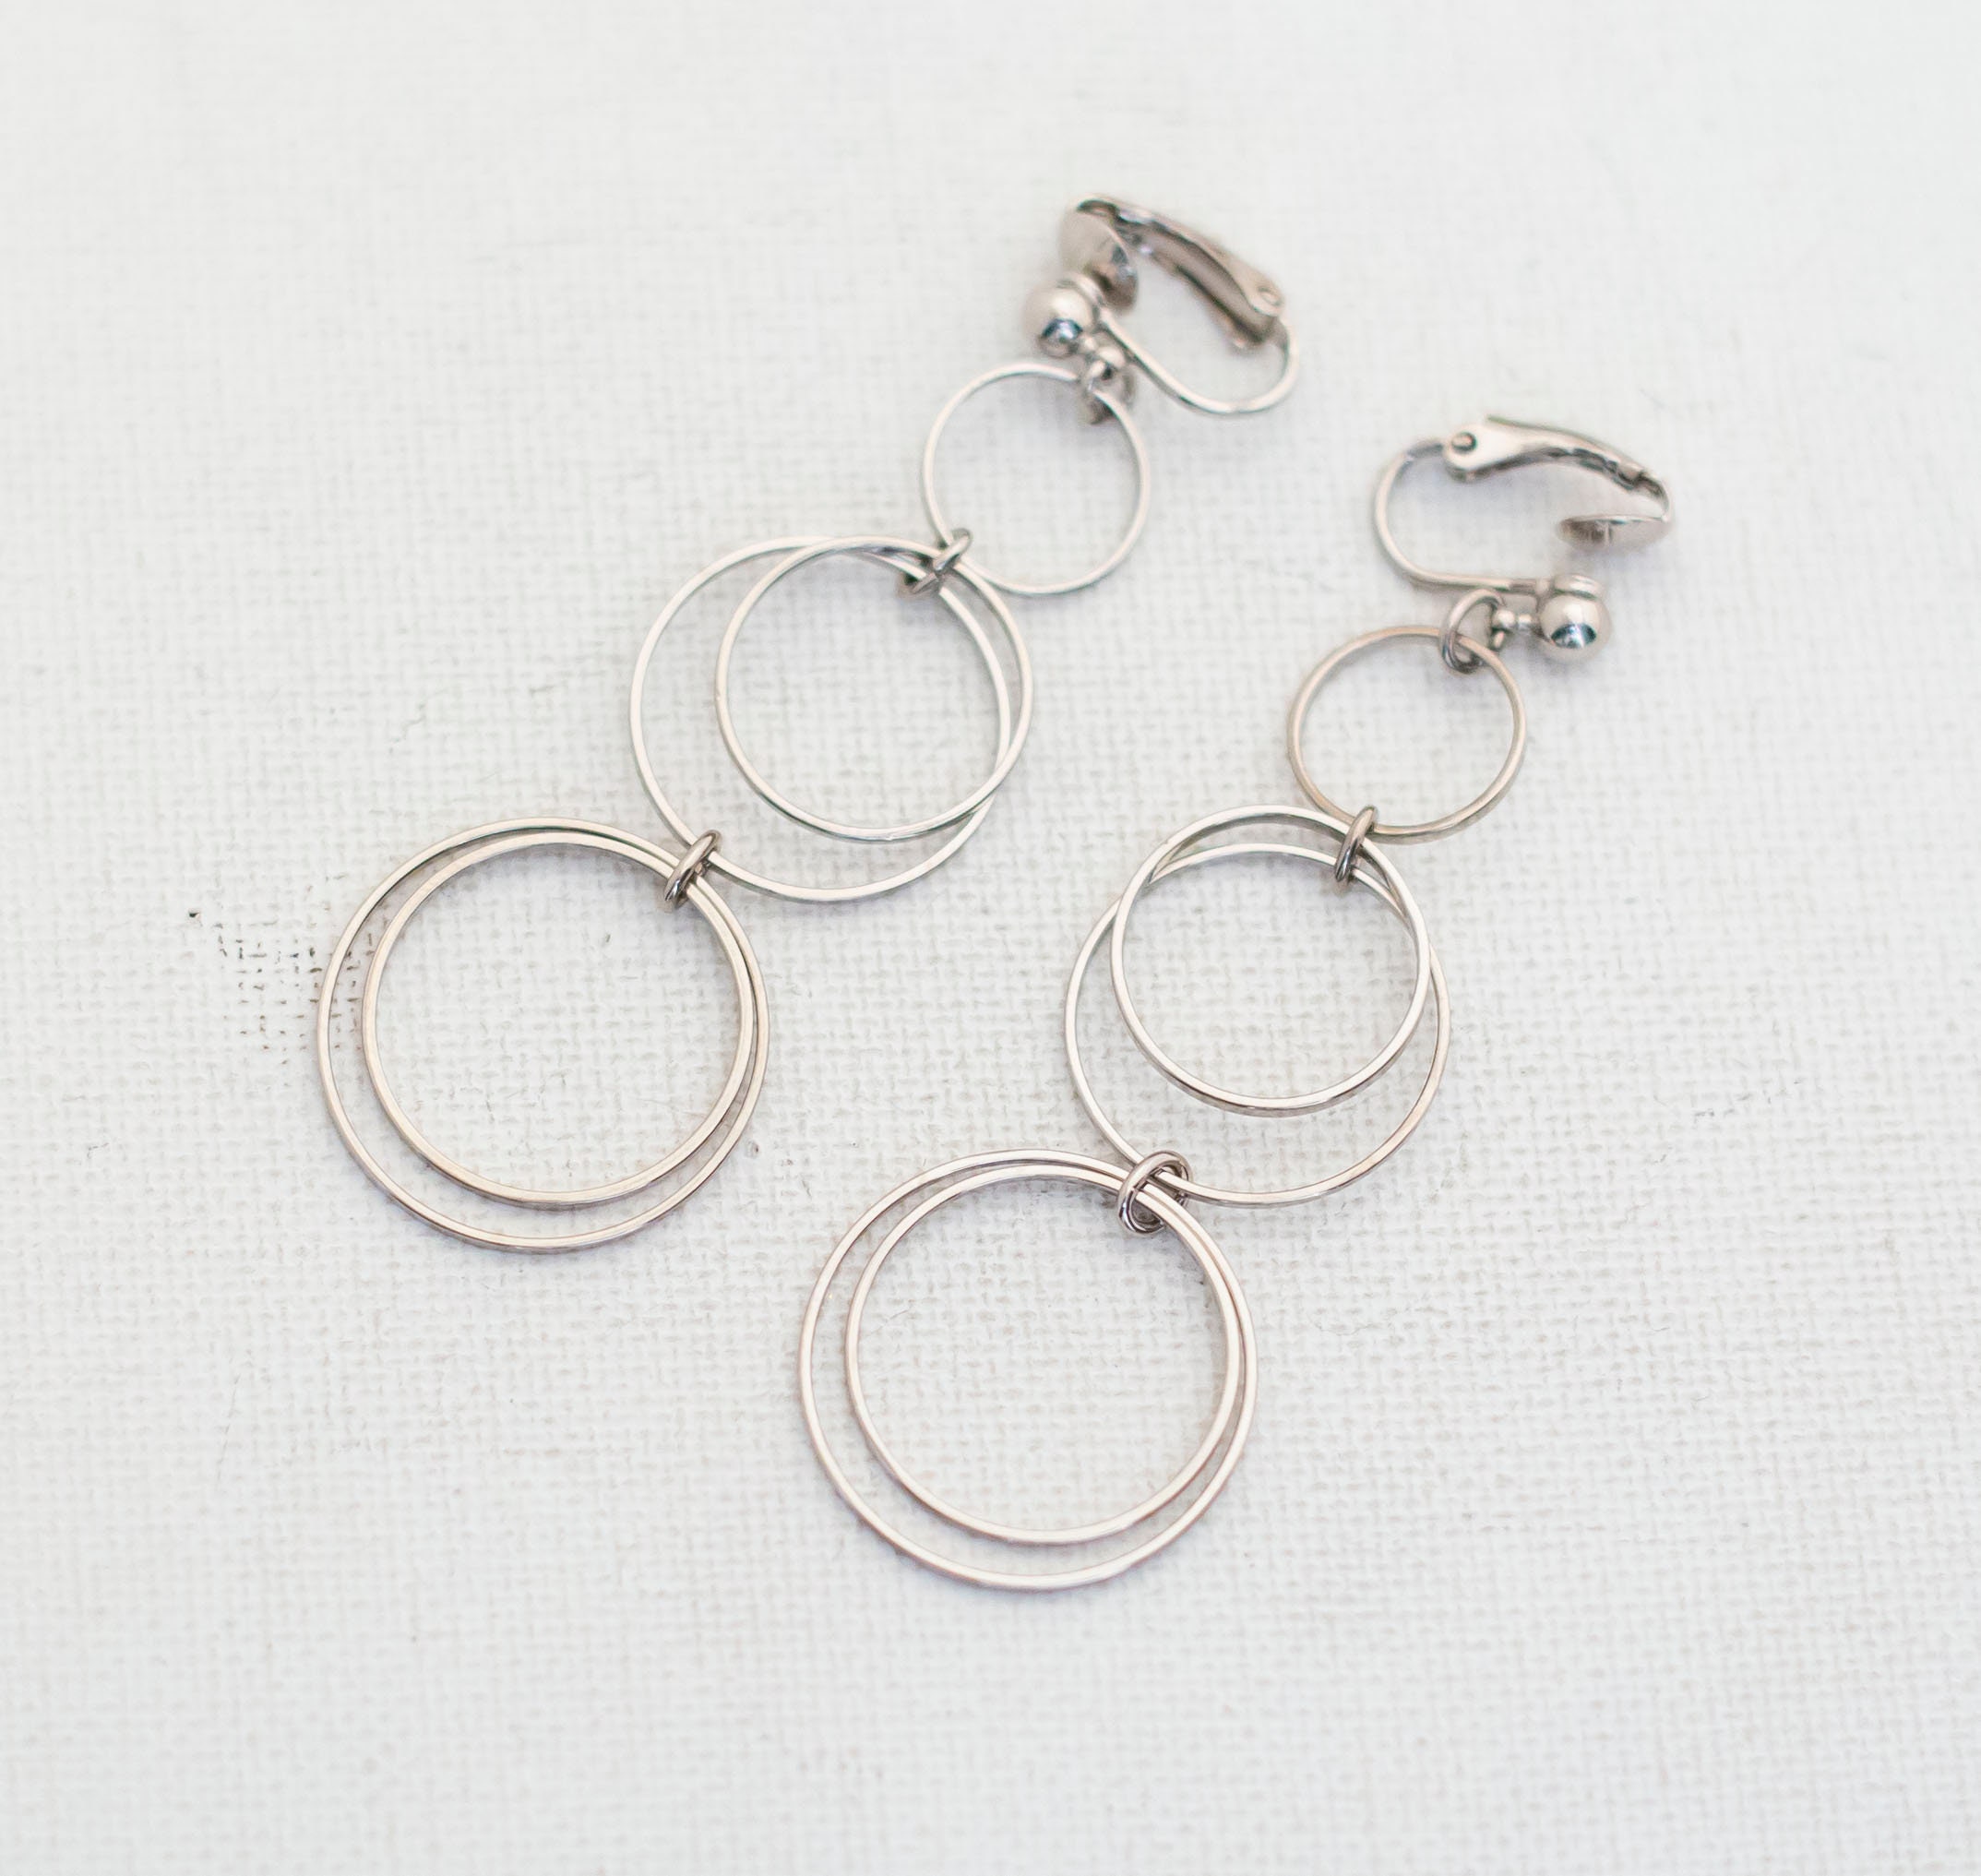 pearl chanel earrings cc clip